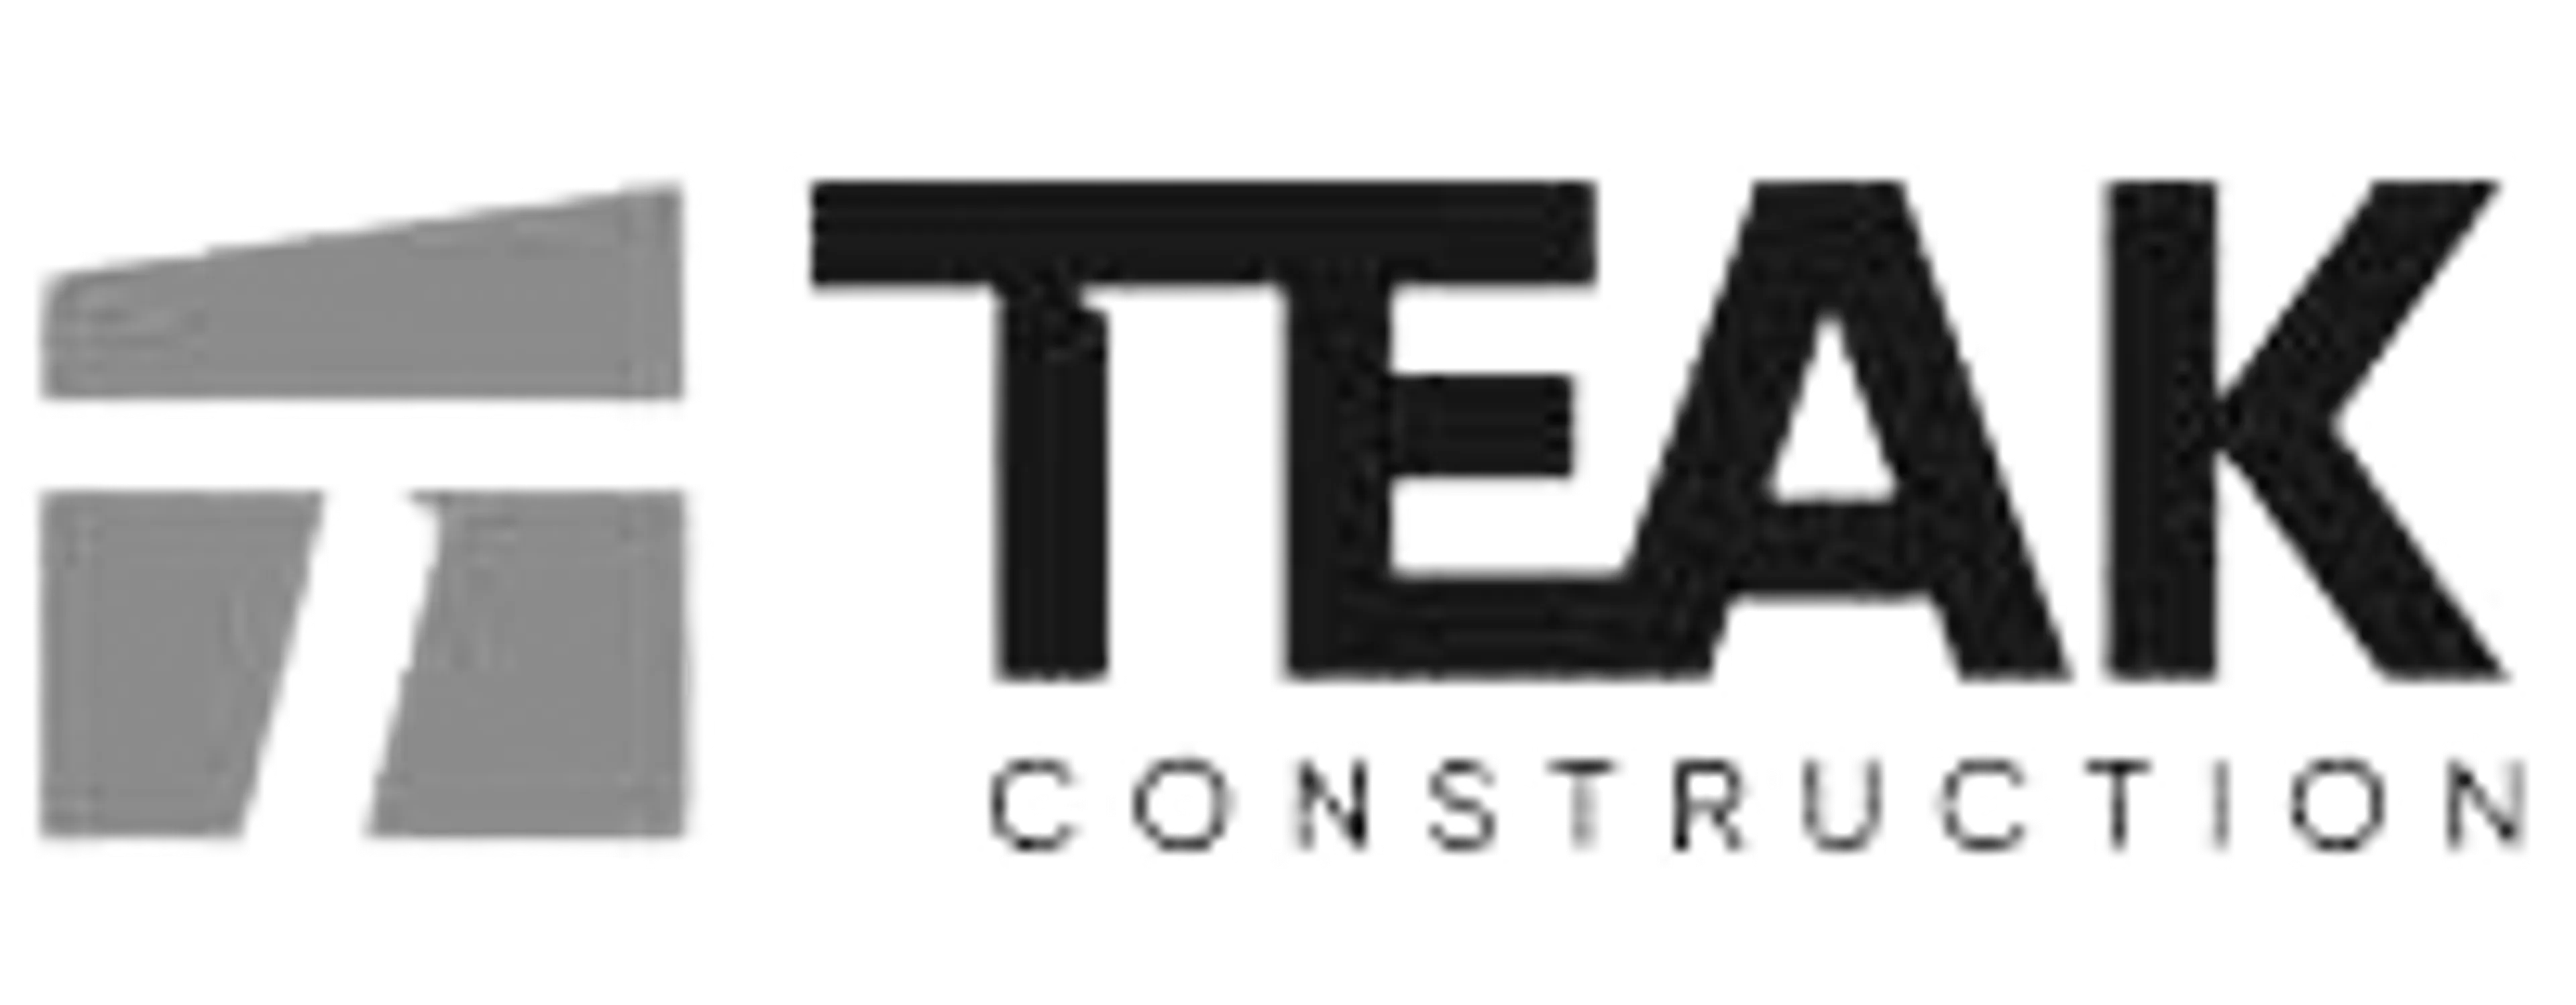 teak logo